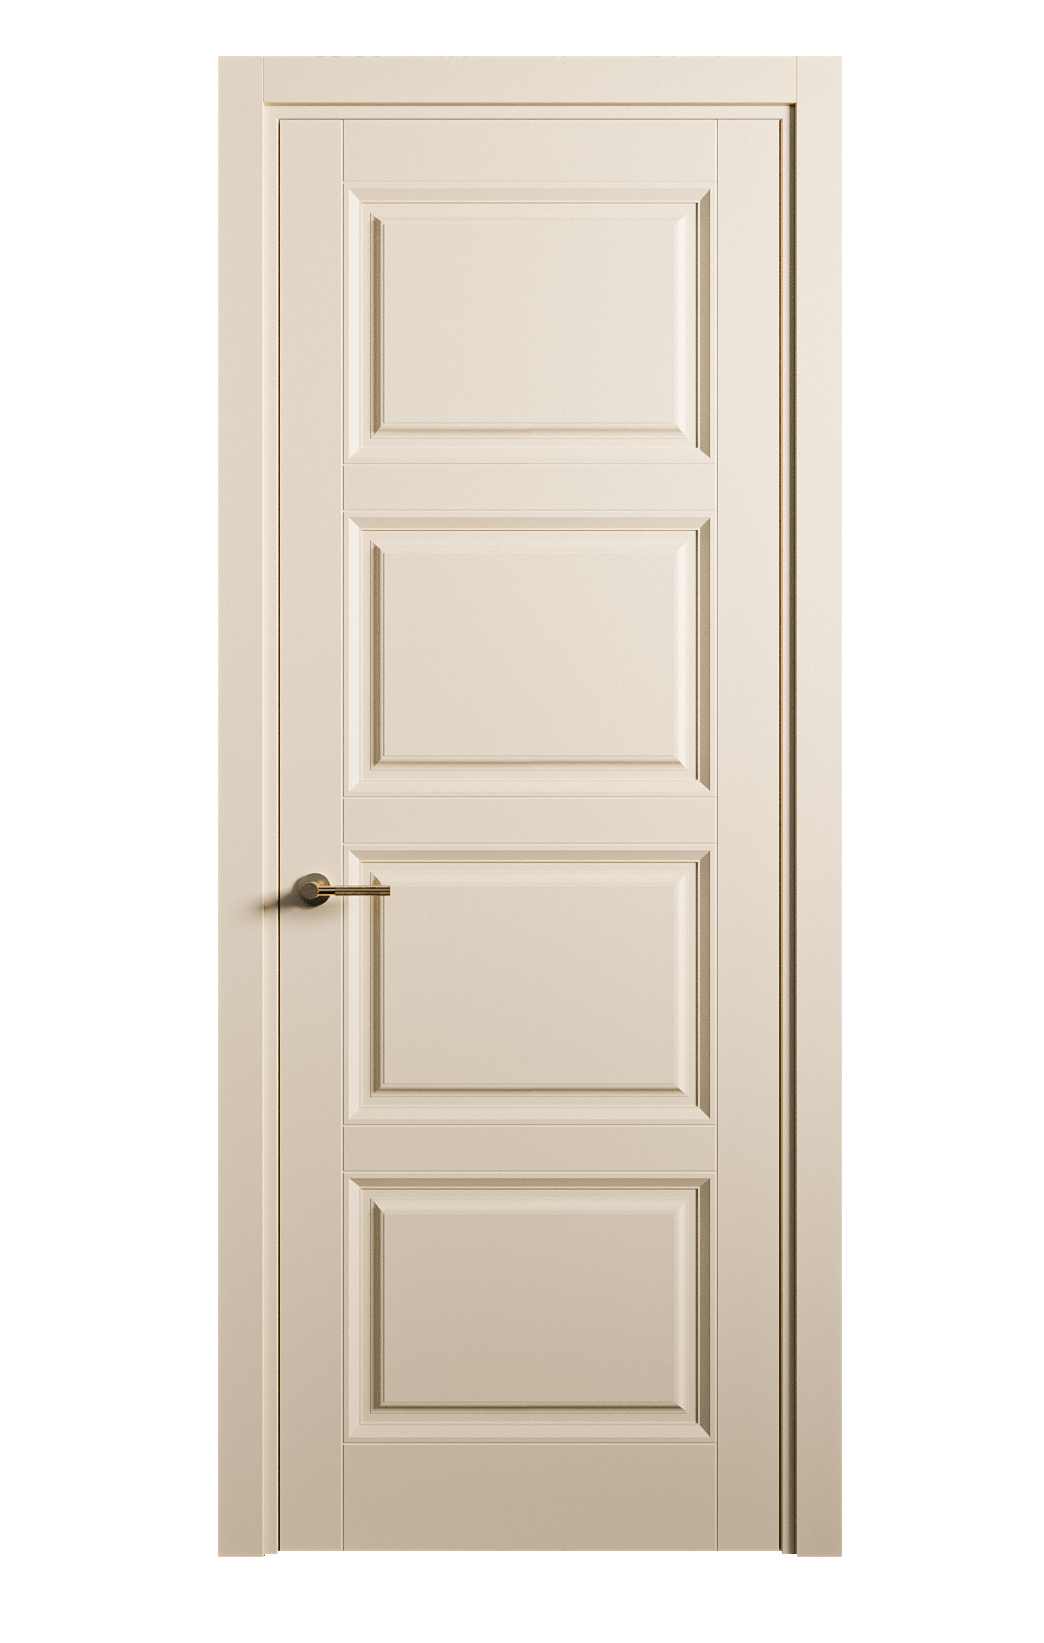 Межкомнатная дверь Venezia-4 глухая эмаль ral 1015 25802